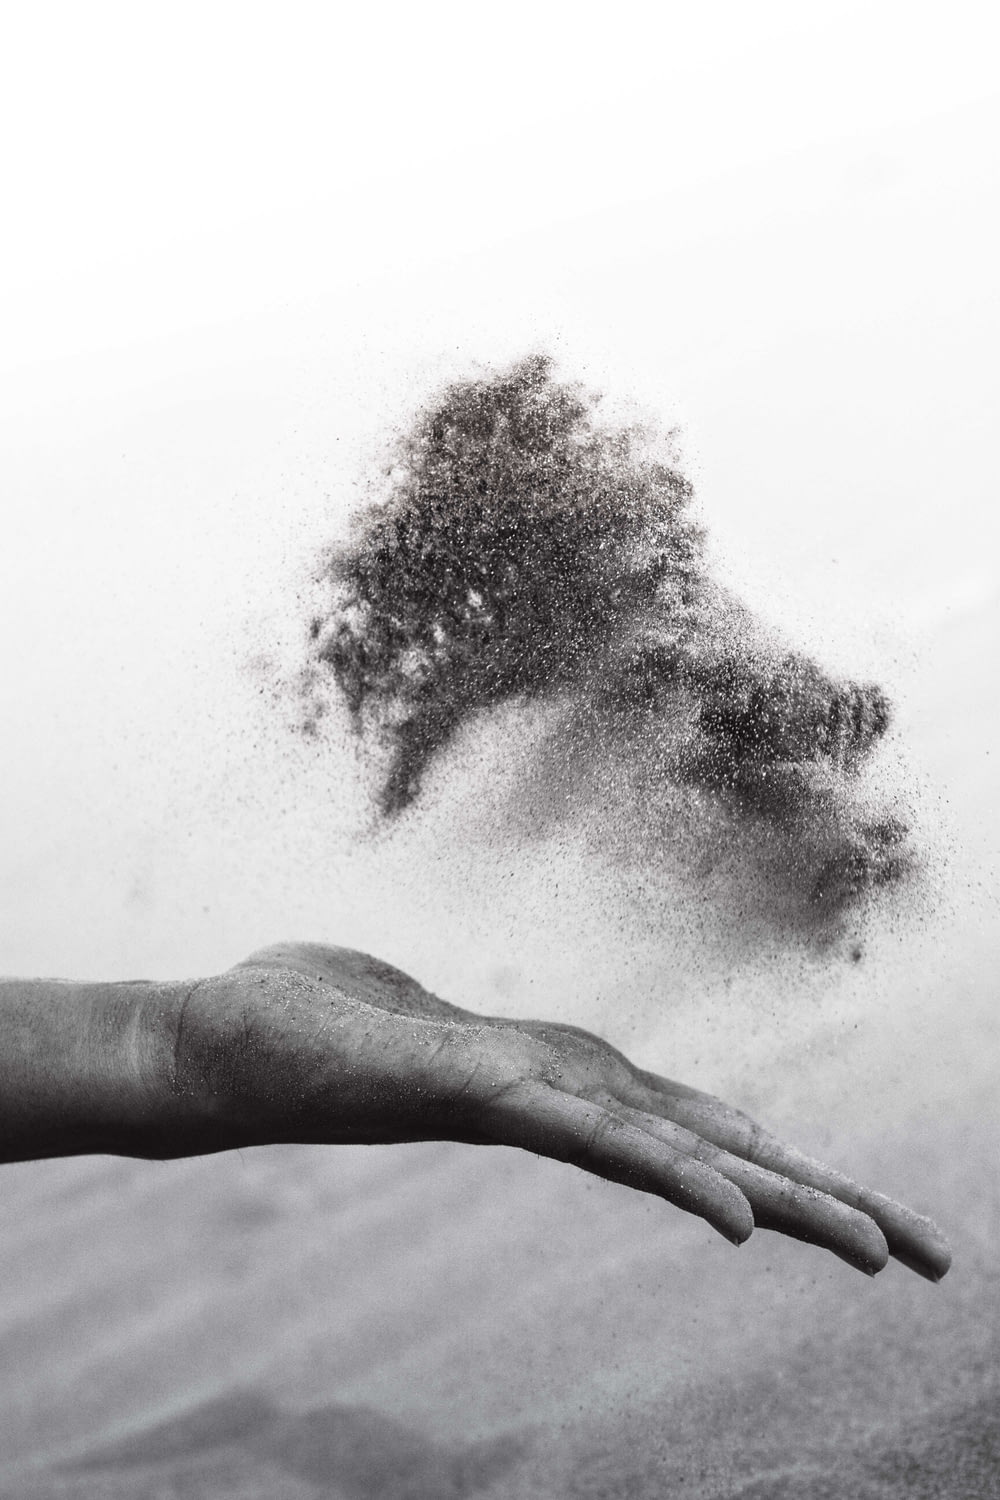 砂を広げる人の手のグレースケール写真